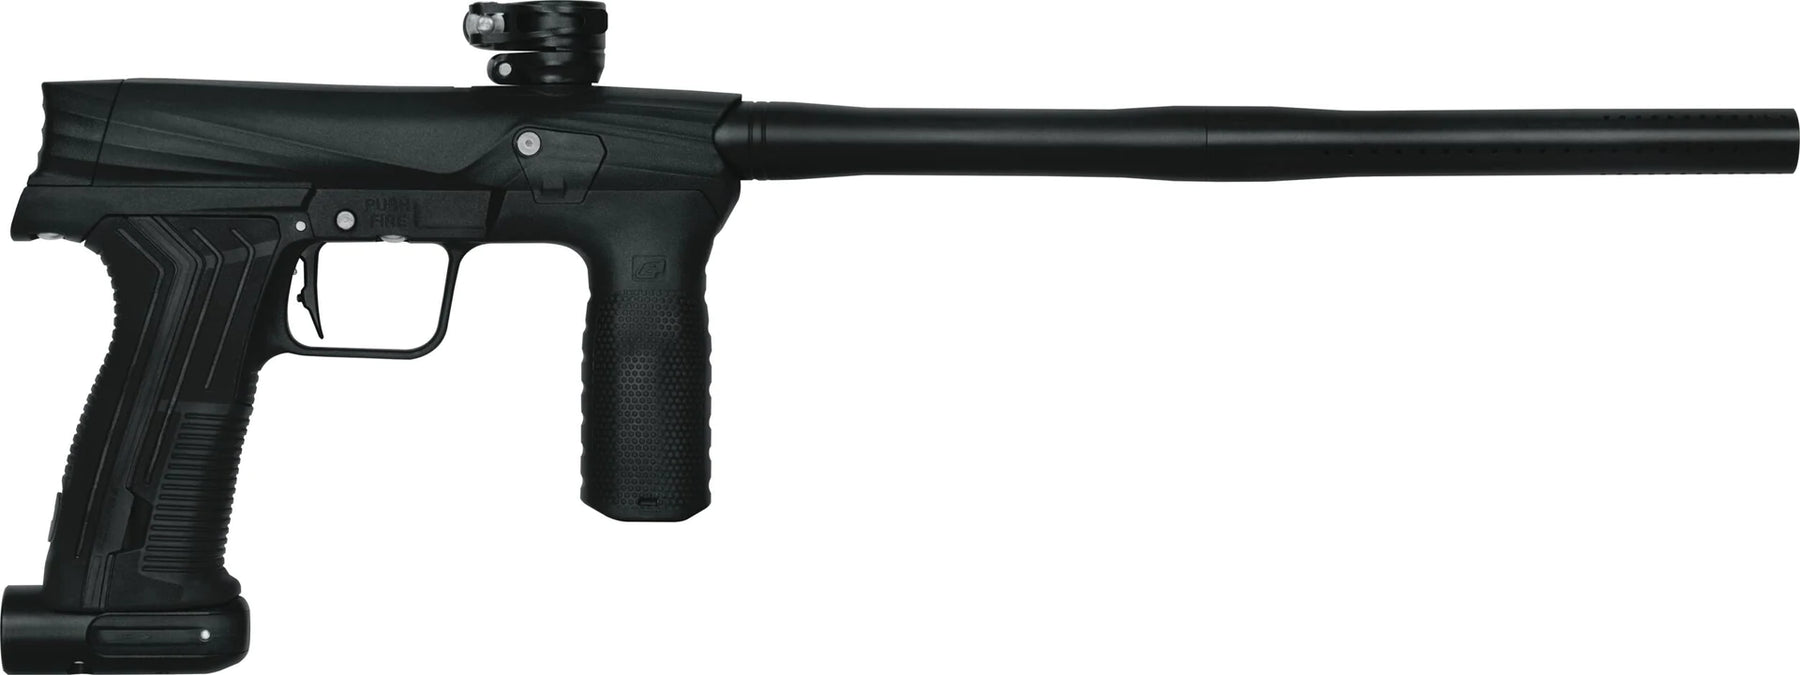 paintball marker gun